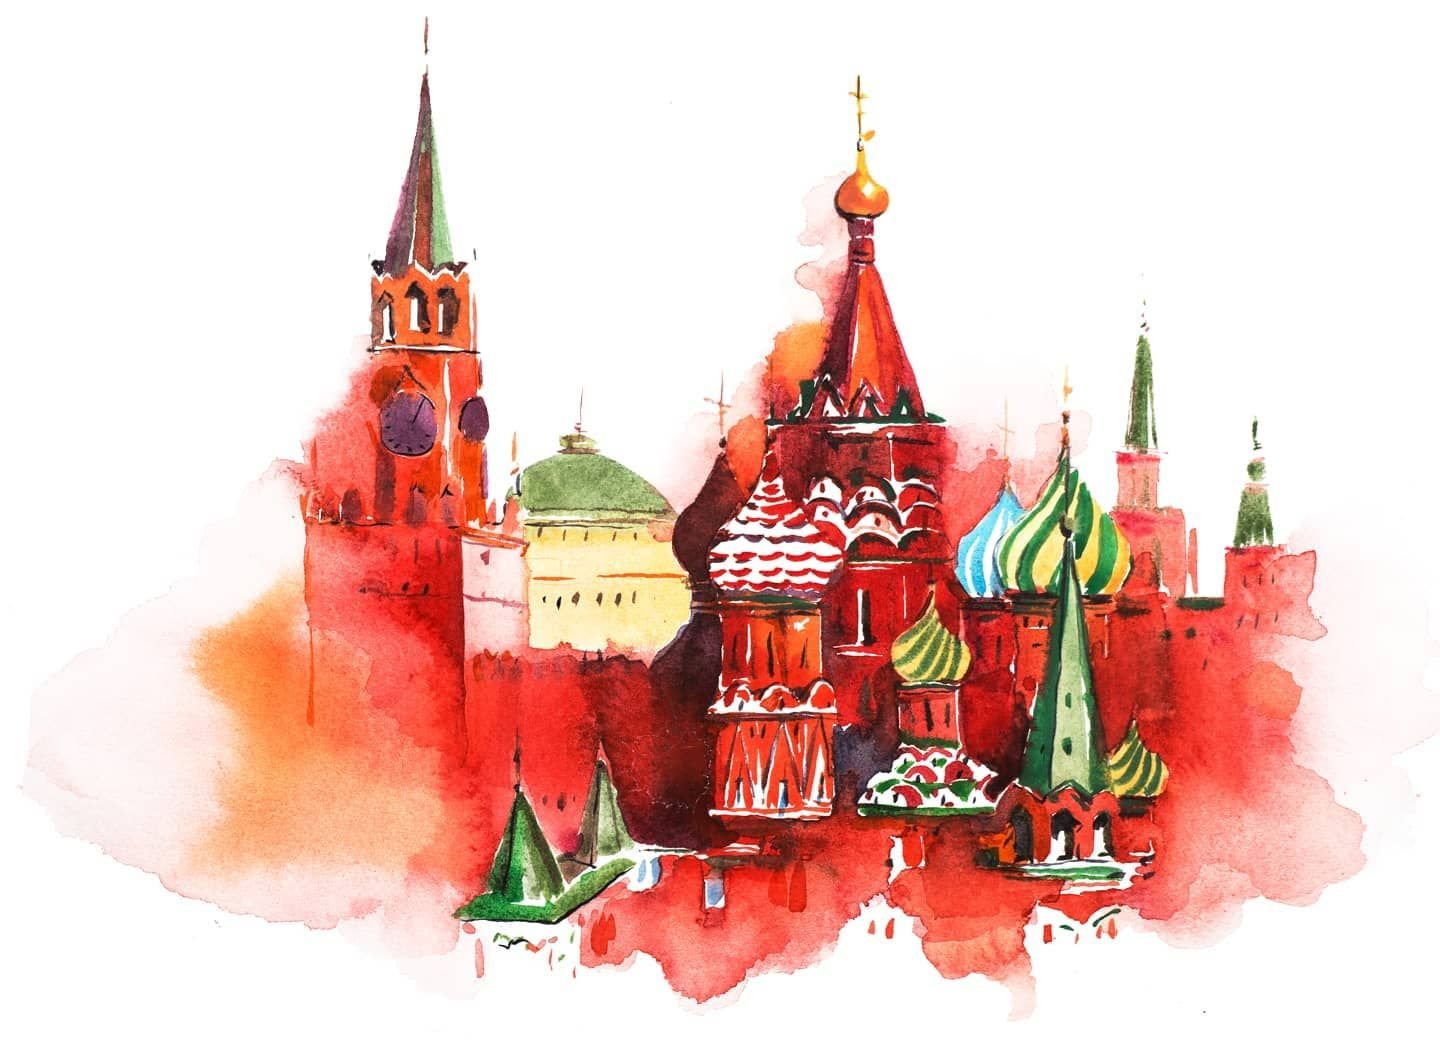 Кремль иллюстрация